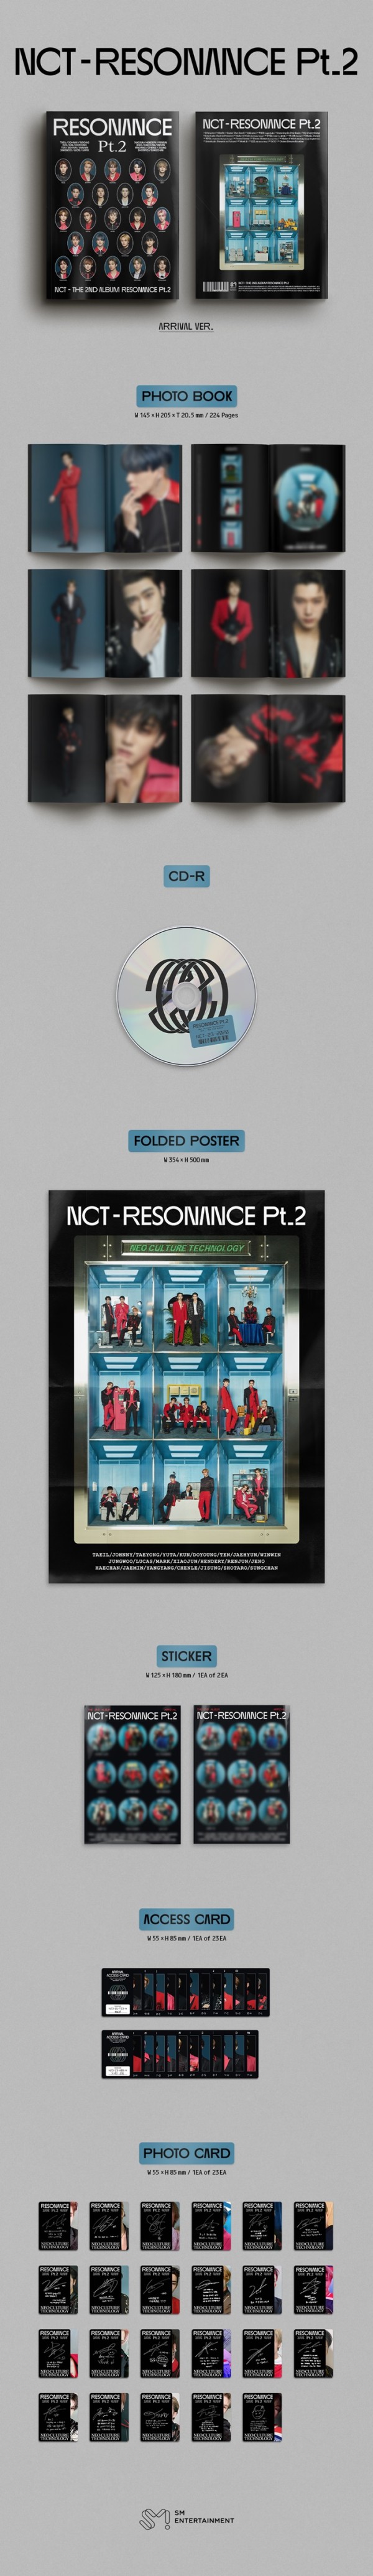 NCT｜韓国セカンドアルバム『RESONANCE Pt.2』Arrival Ver.が登場